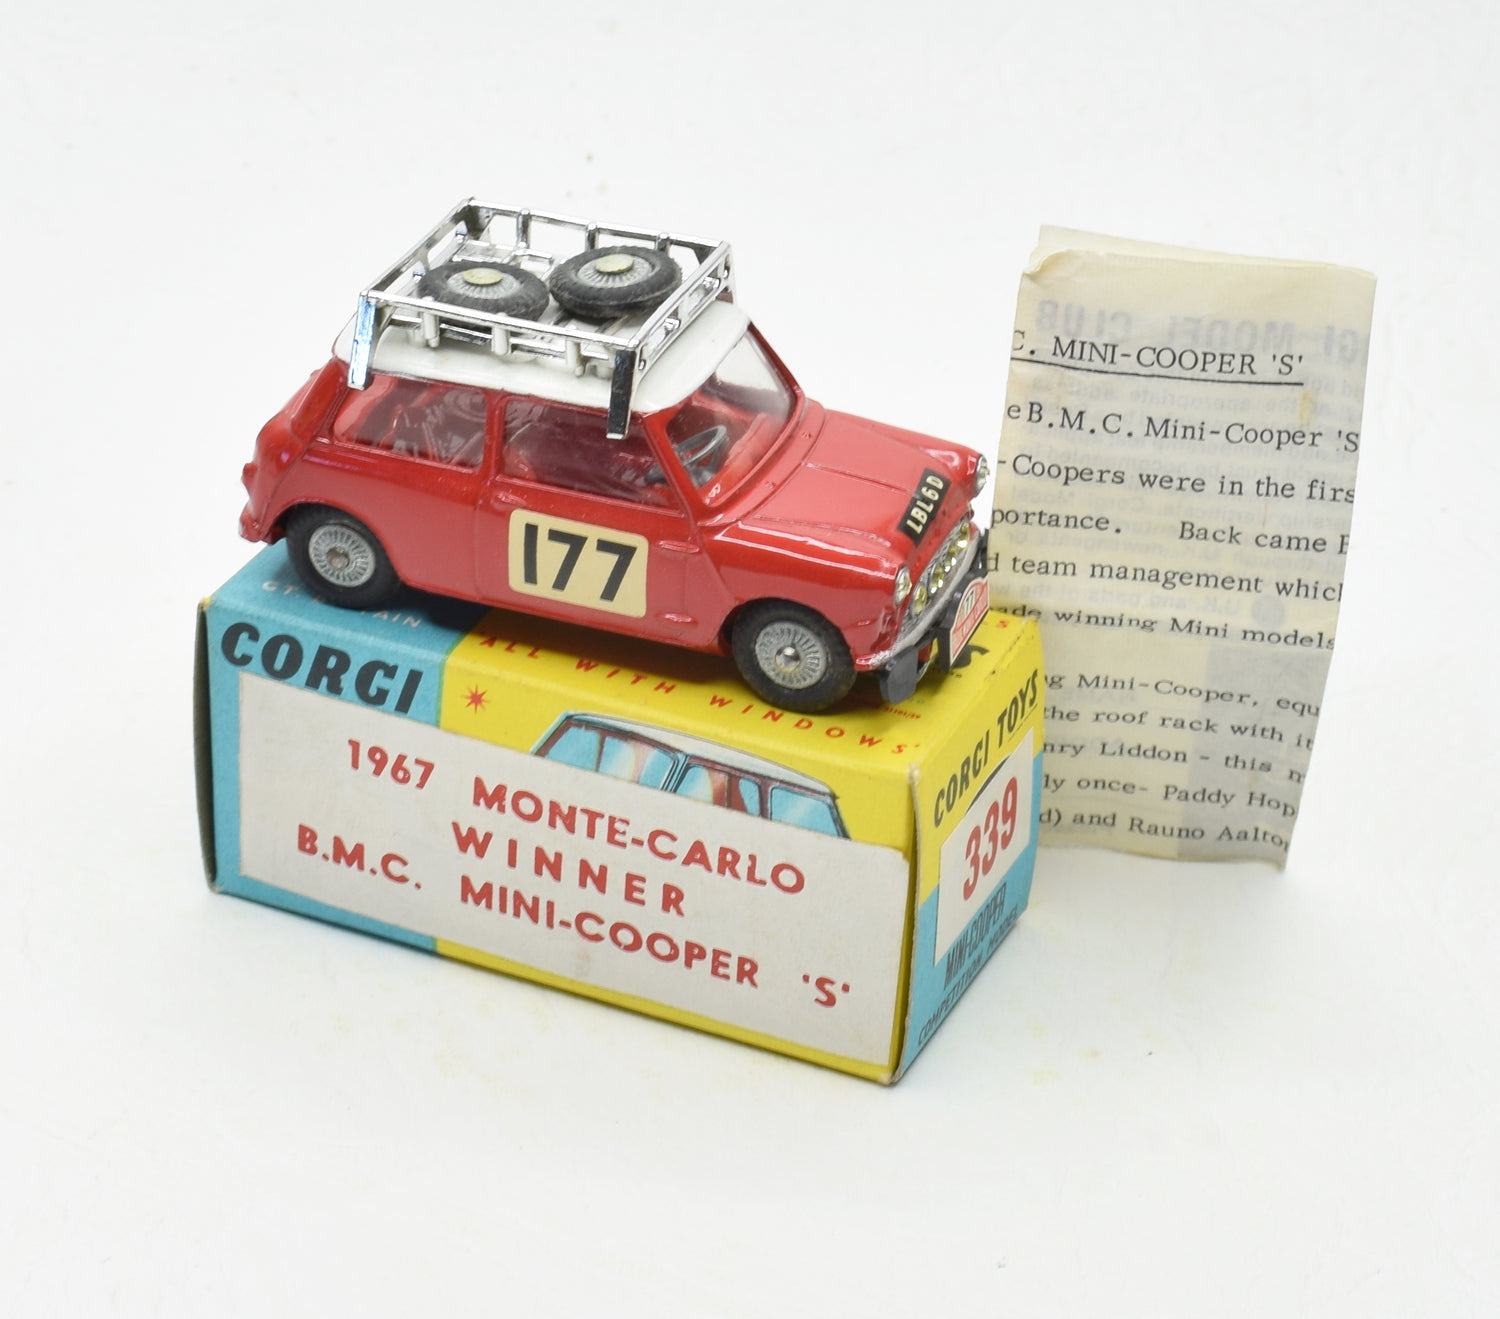 Corgi Toys 339 Austin Monte Carlo Mini Cooper 'S'. Very Near Mint/boxed (New The 'Geneva' Collection)